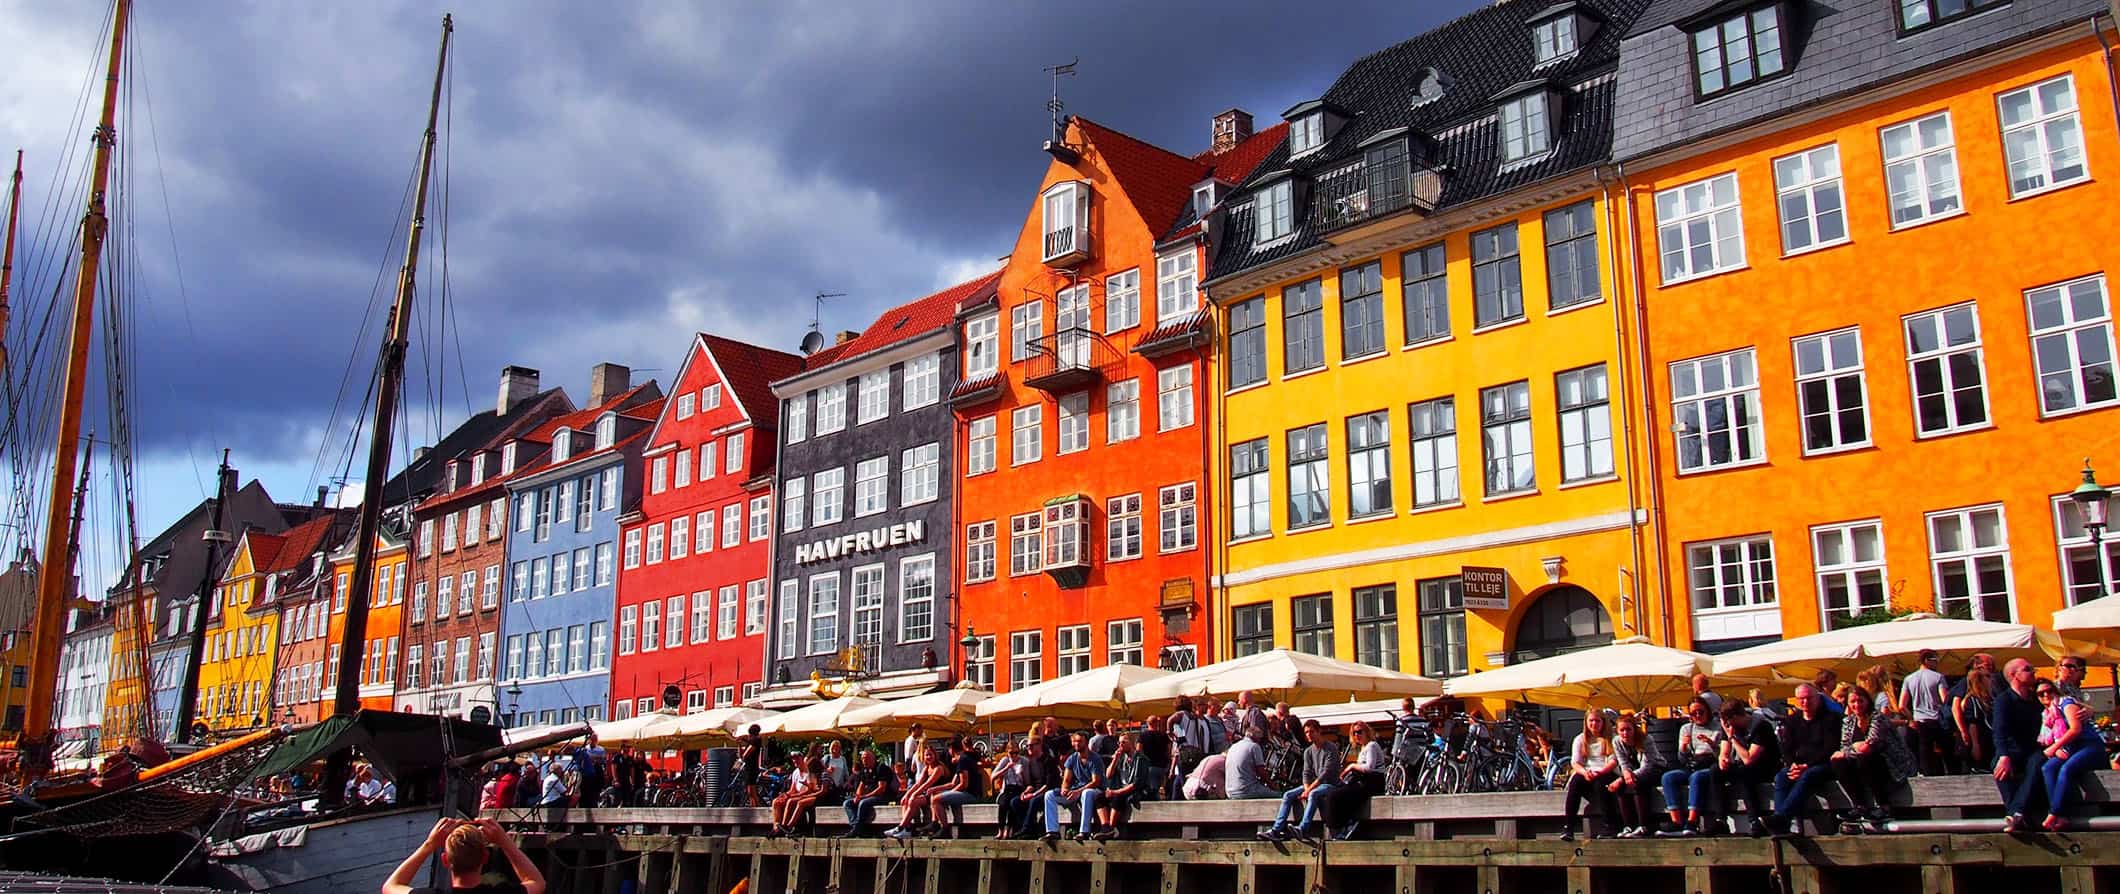 Edifícios mult i-coloridos ao longo de um dos muitos canais em Copenhague, Dinamarca